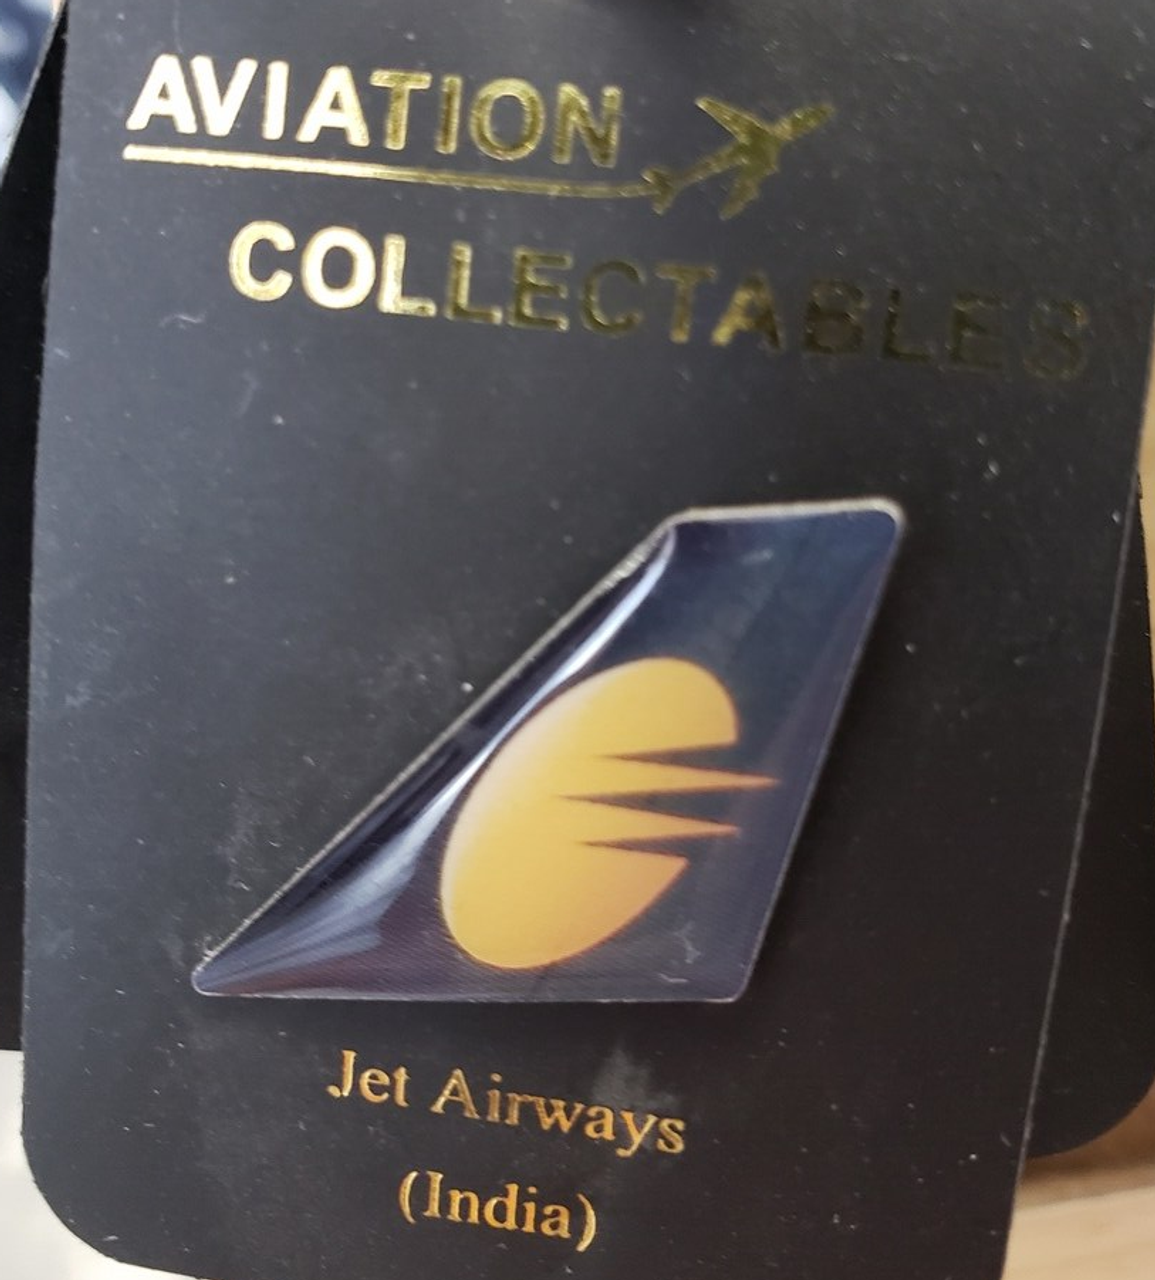 Lapel pin - Jet Airways tail